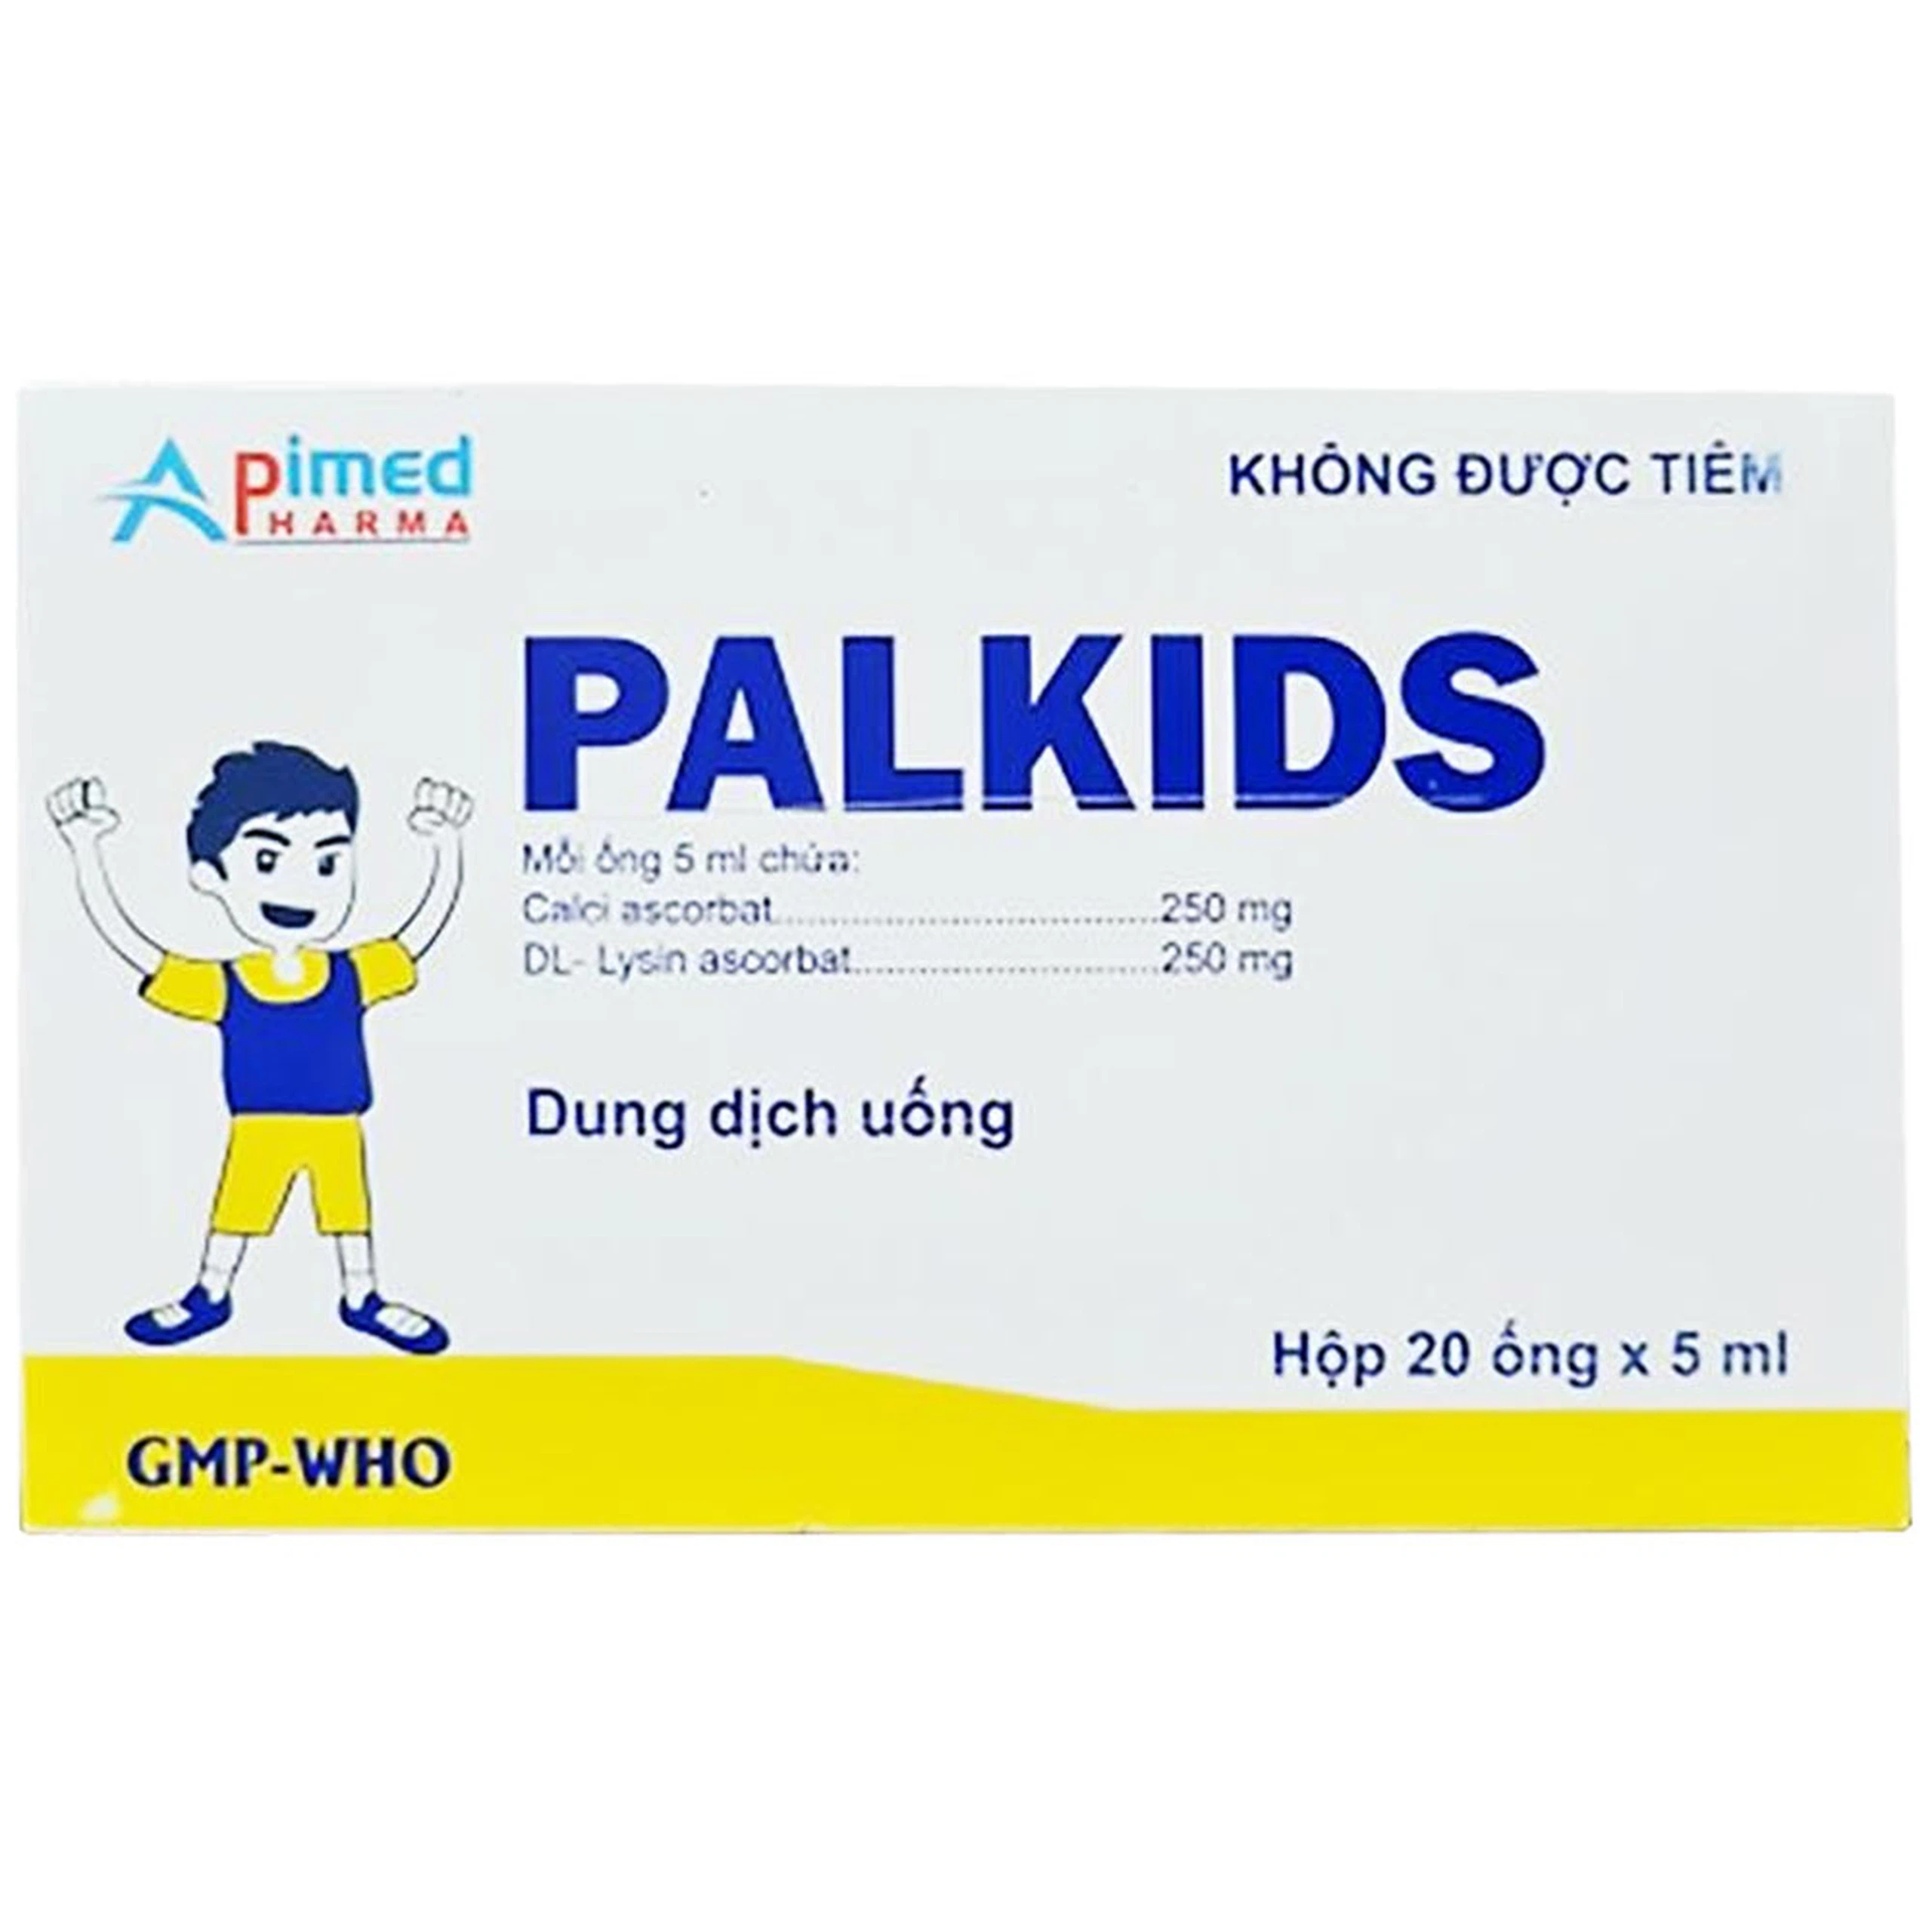 Dung dịch uống Palkids 5ml Apimed suy nhược cơ thể, sút cân, chán ăn, mệt mỏi (20 ống)